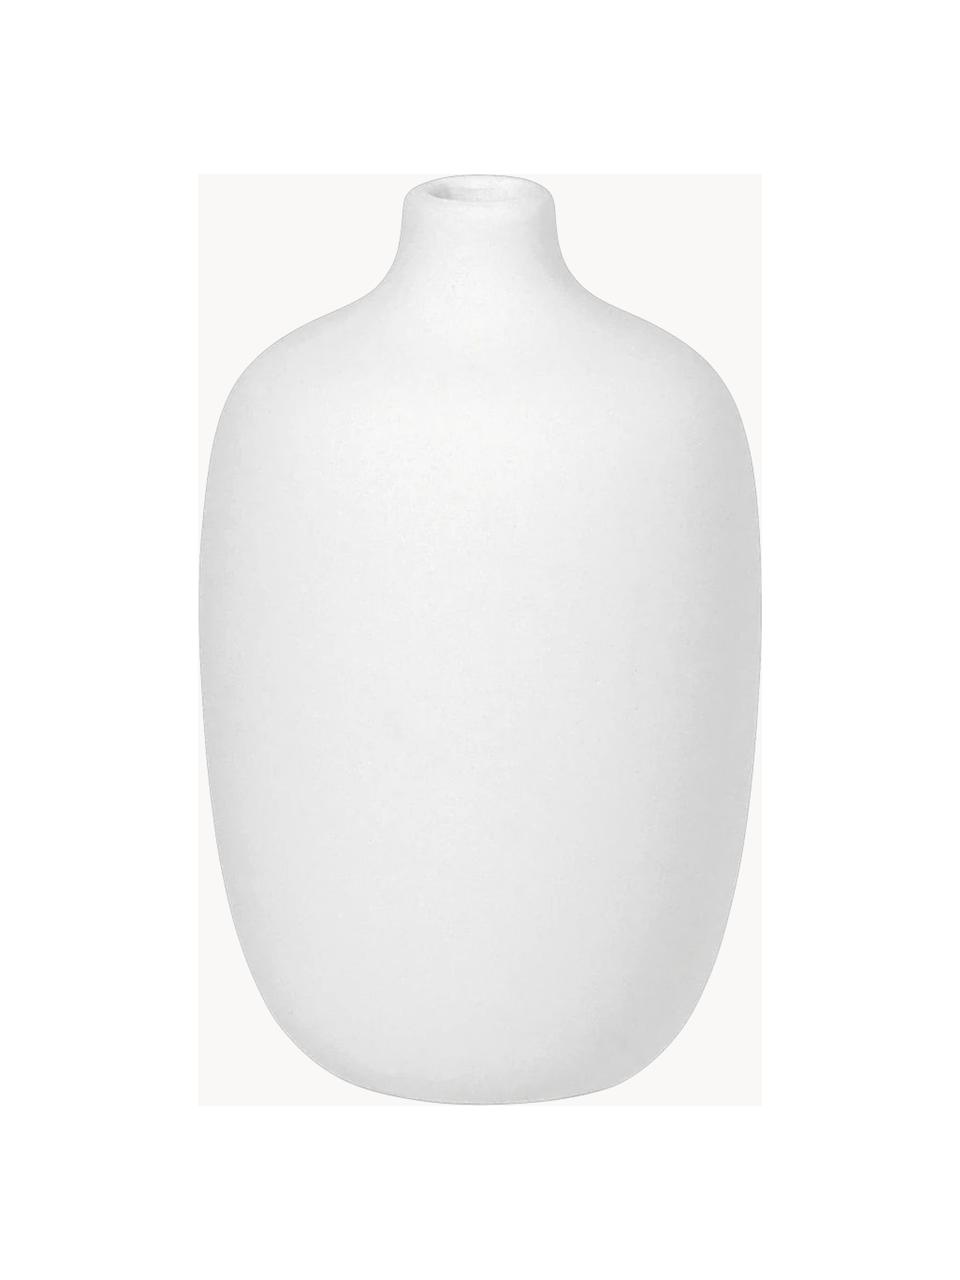 Designová váza Ceola, V 13 cm, Keramika, Bílá, Ø 8 cm, V 13 cm